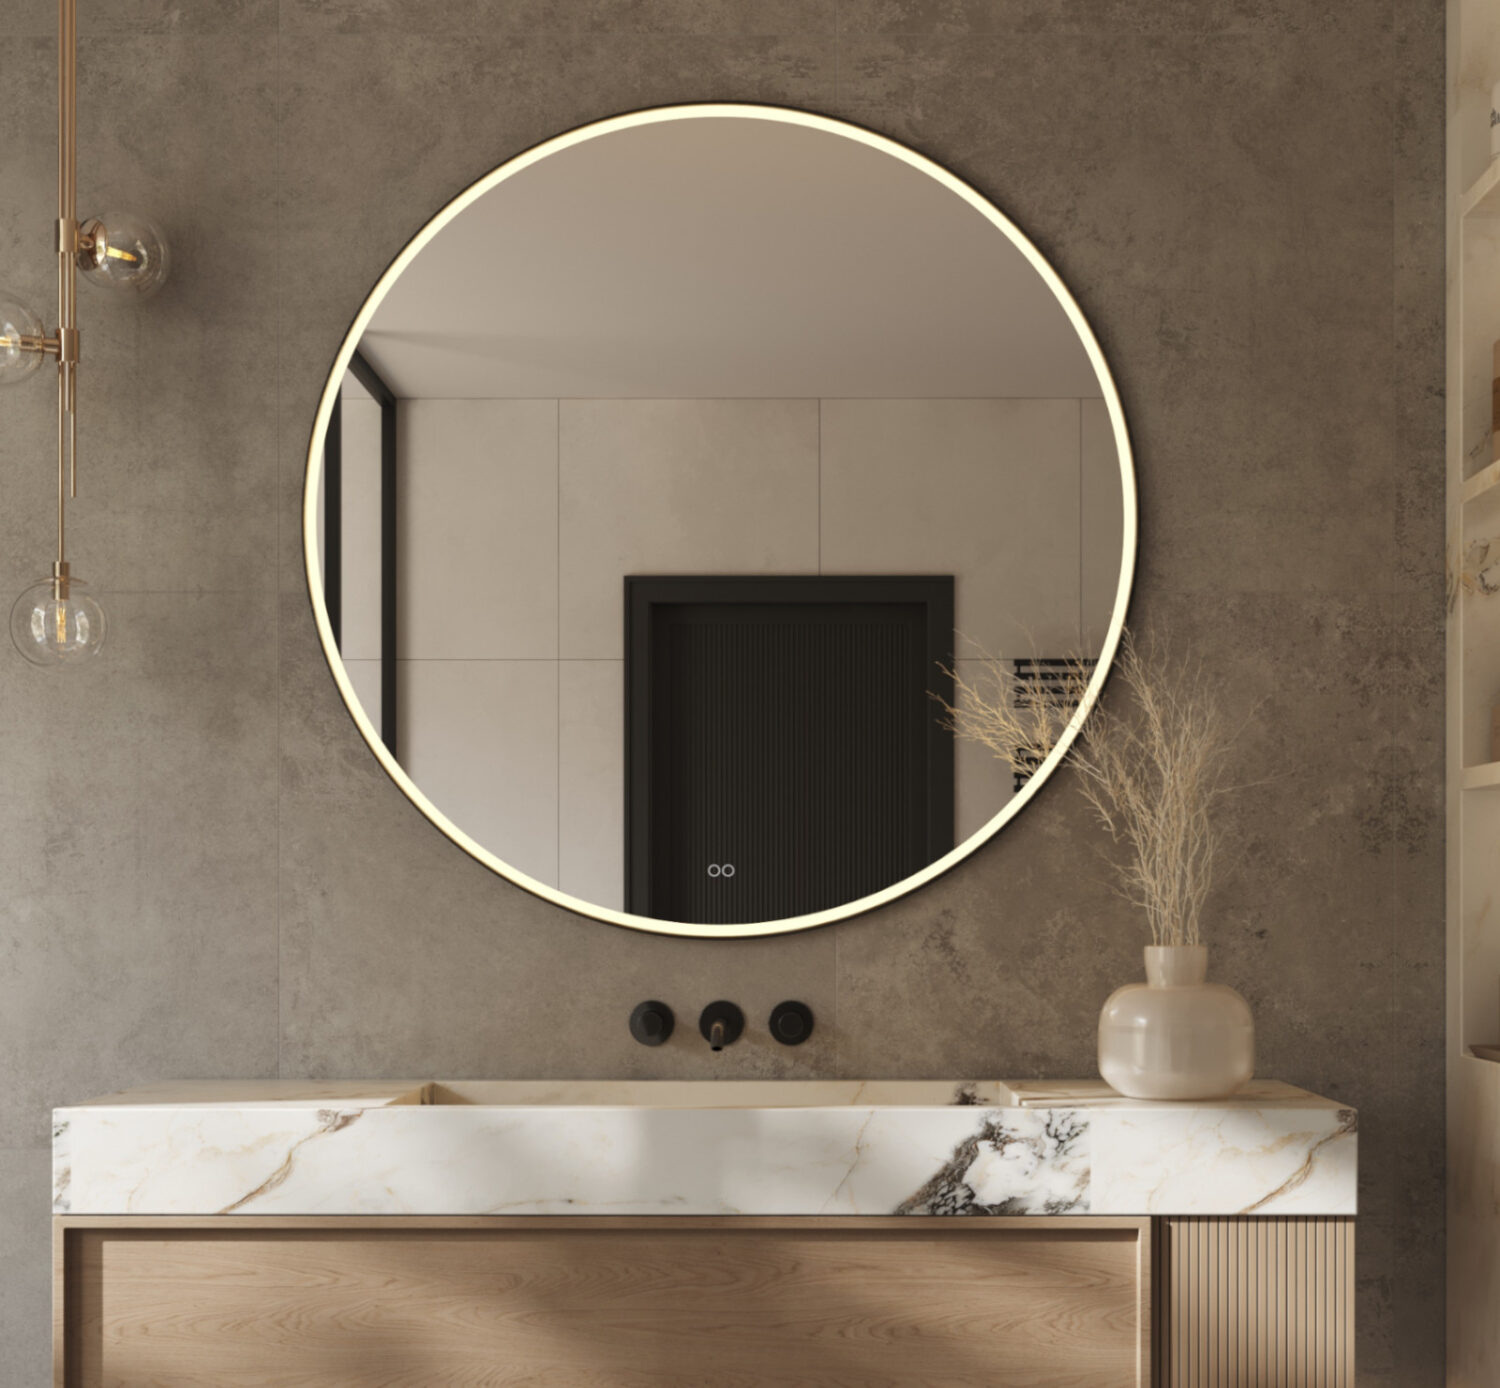 Stijlvolle 120 cm ronde spiegel, uitgevoerd met een mat zwarte frame, verlichting, spiegelverwarming en een dubbele touch schakelaar